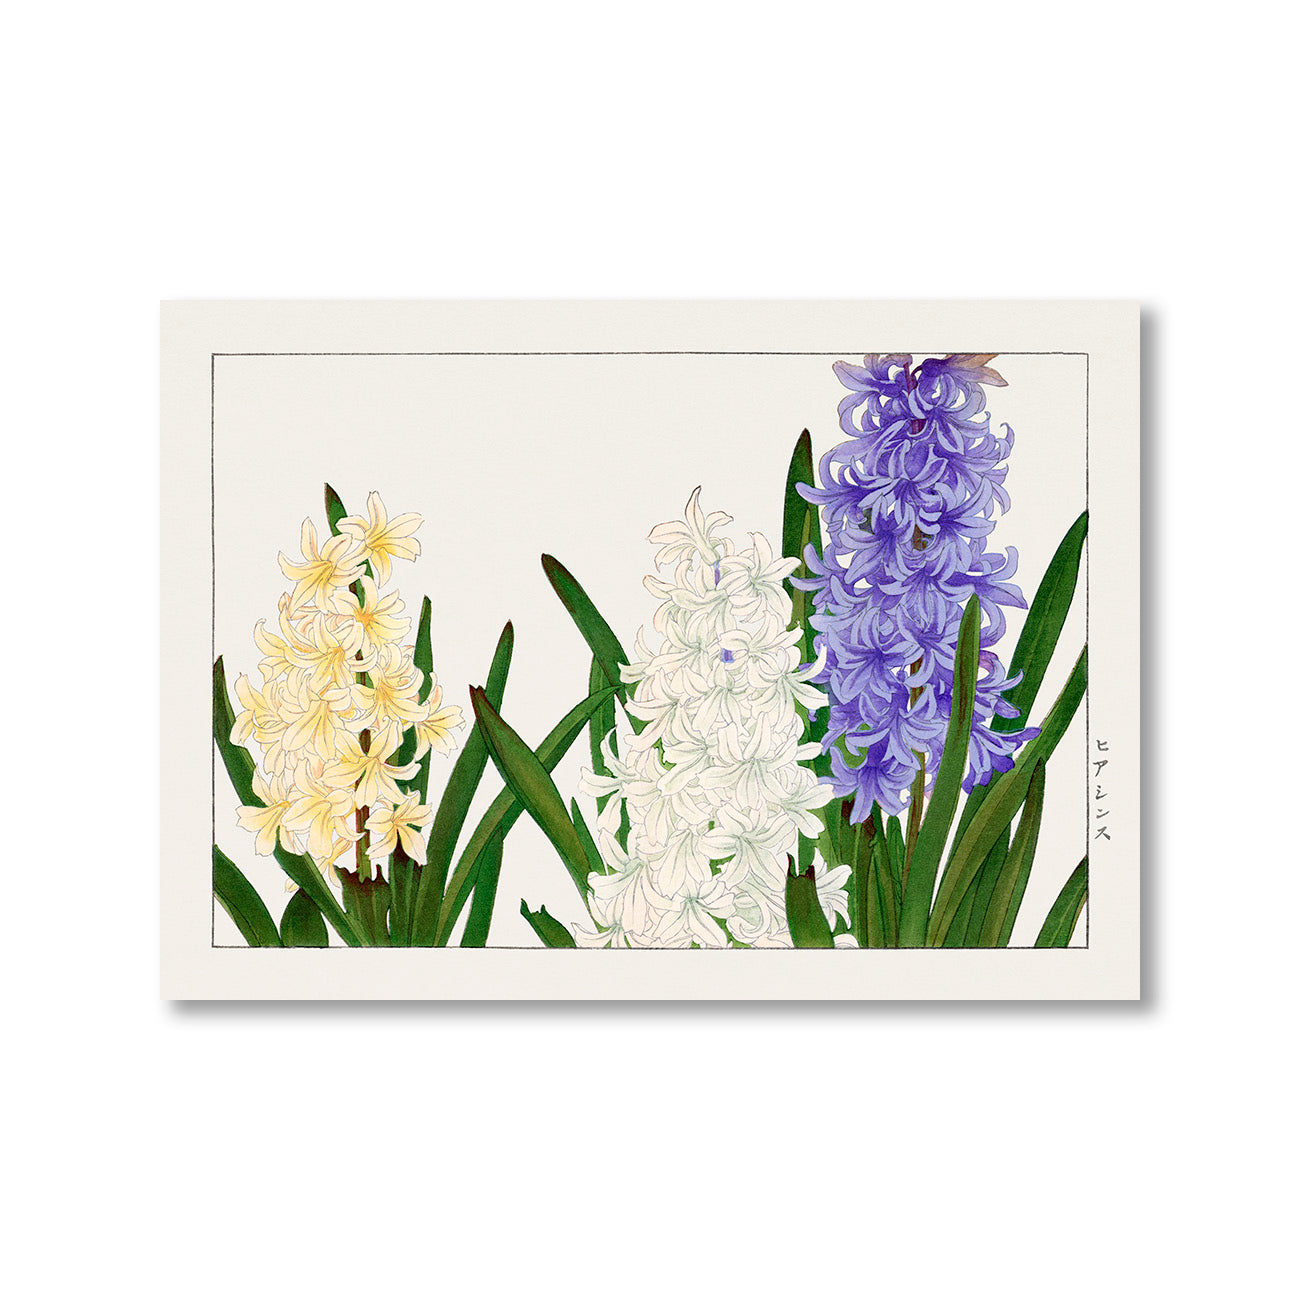 Hyacinthus by Tanigami Konan